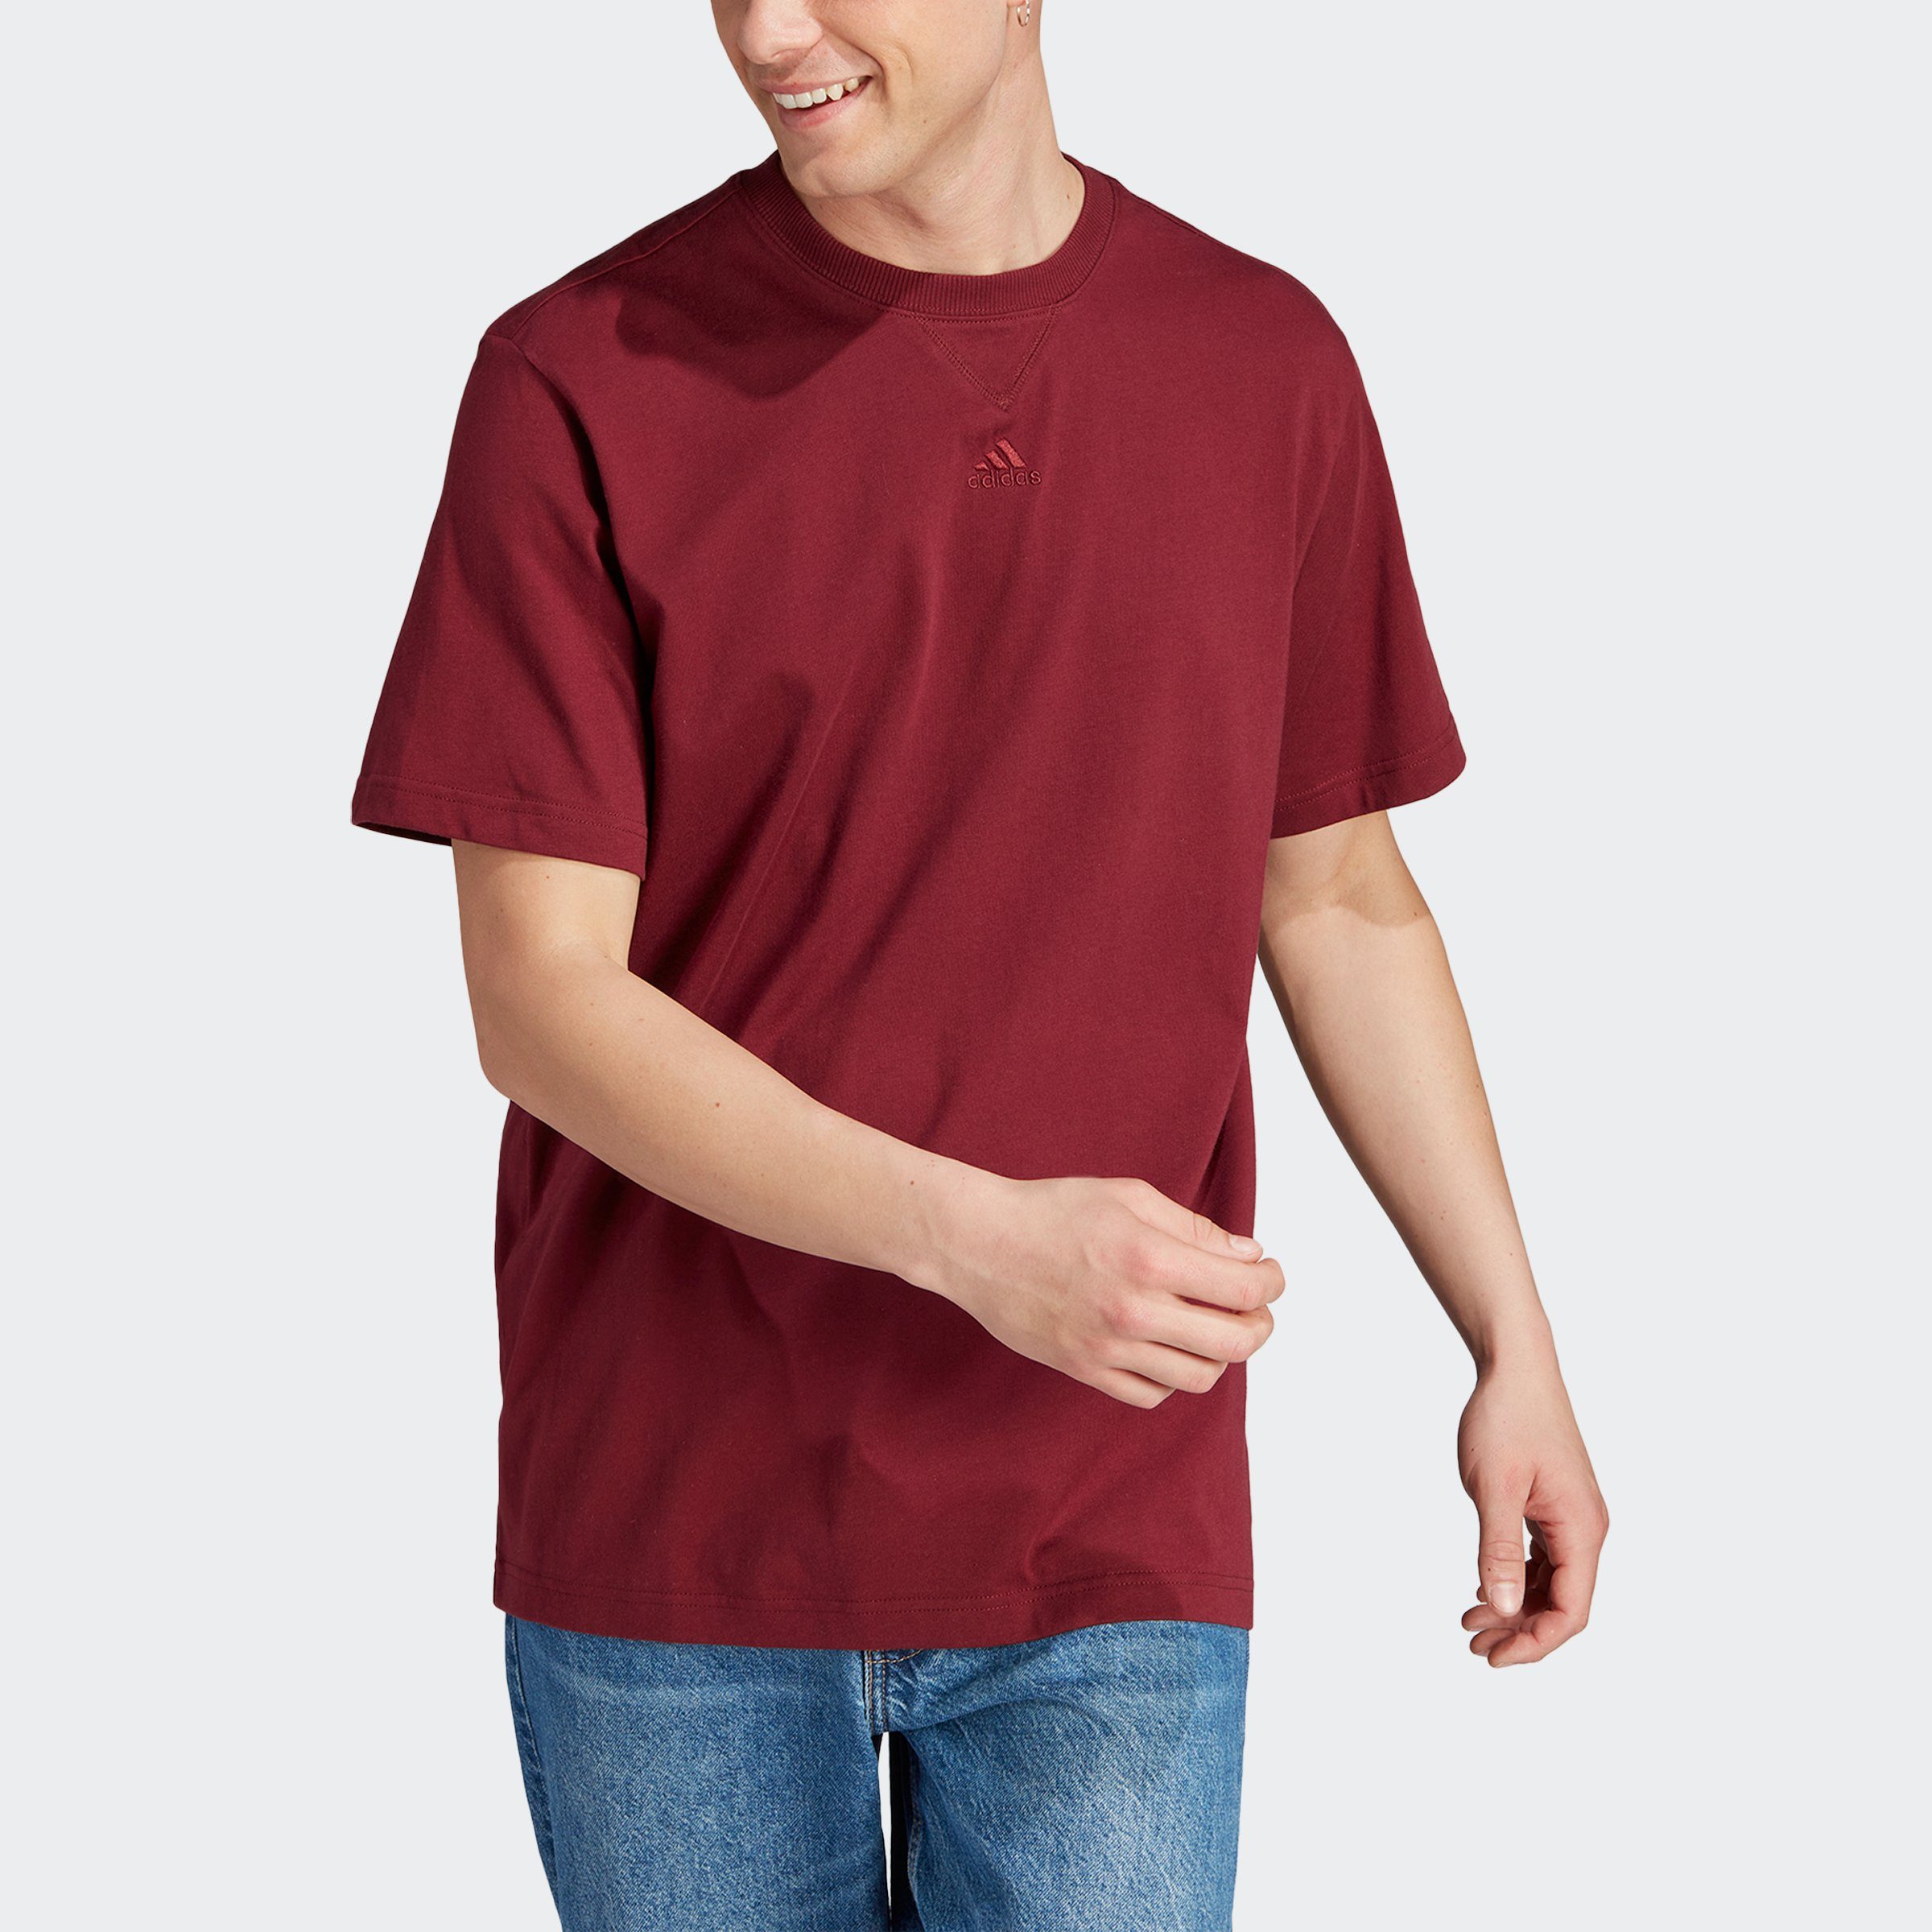 SZN Sportswear Shadow Red ALL M T-Shirt T adidas